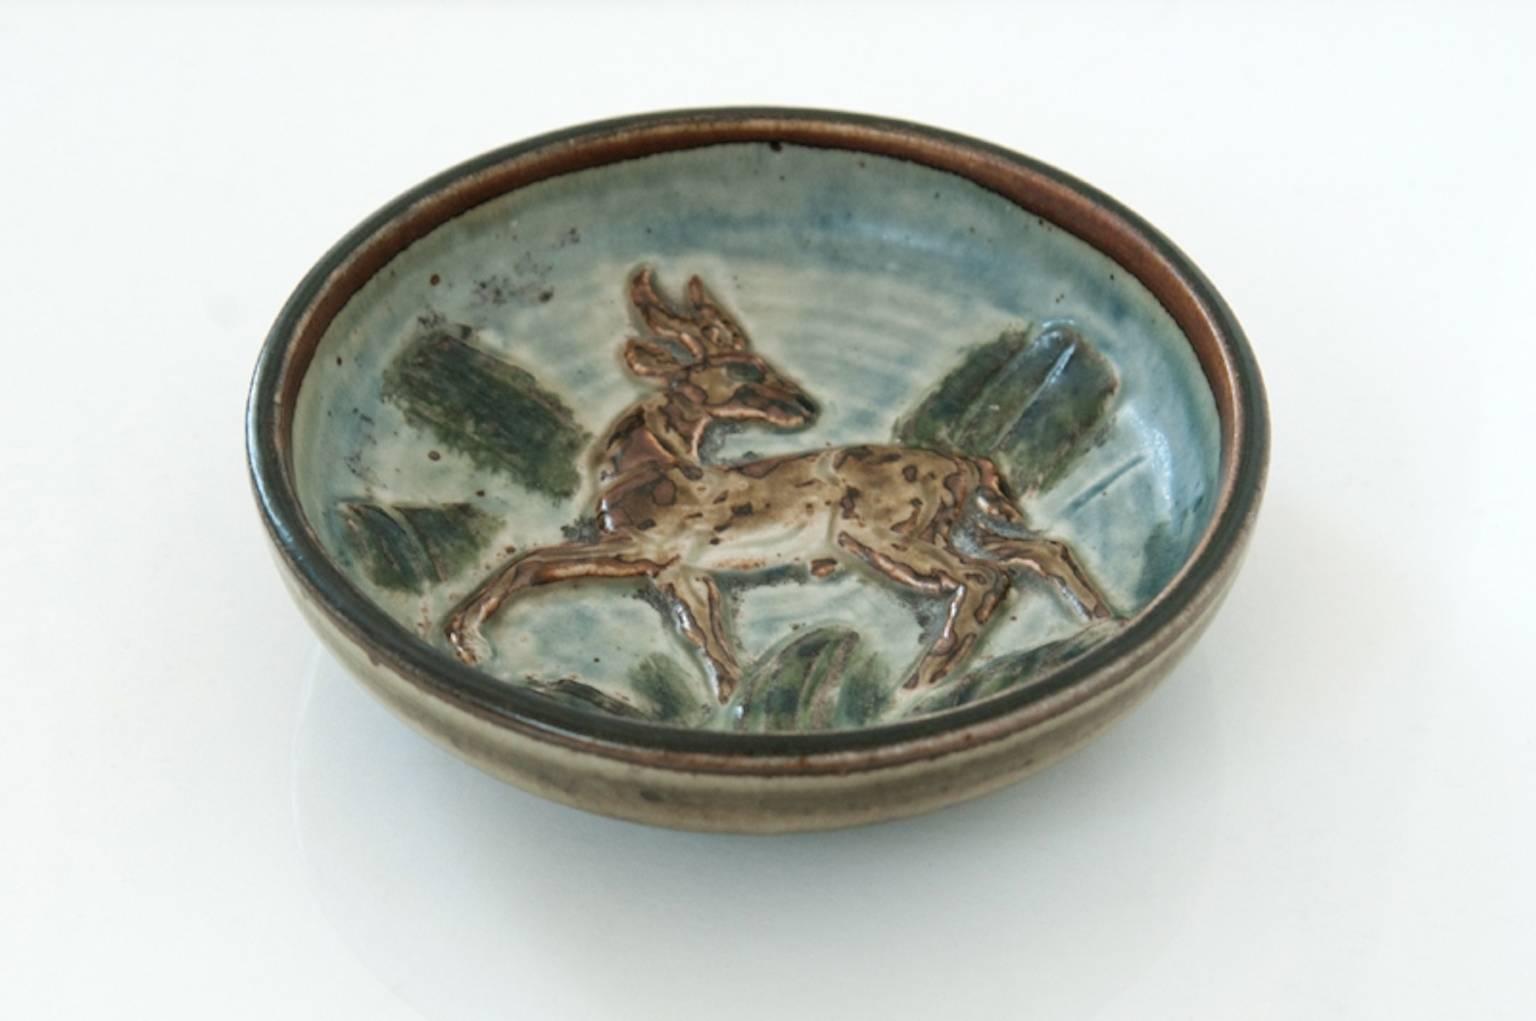 Vieux bol en céramique de style danois moderne avec motif de cerf.

